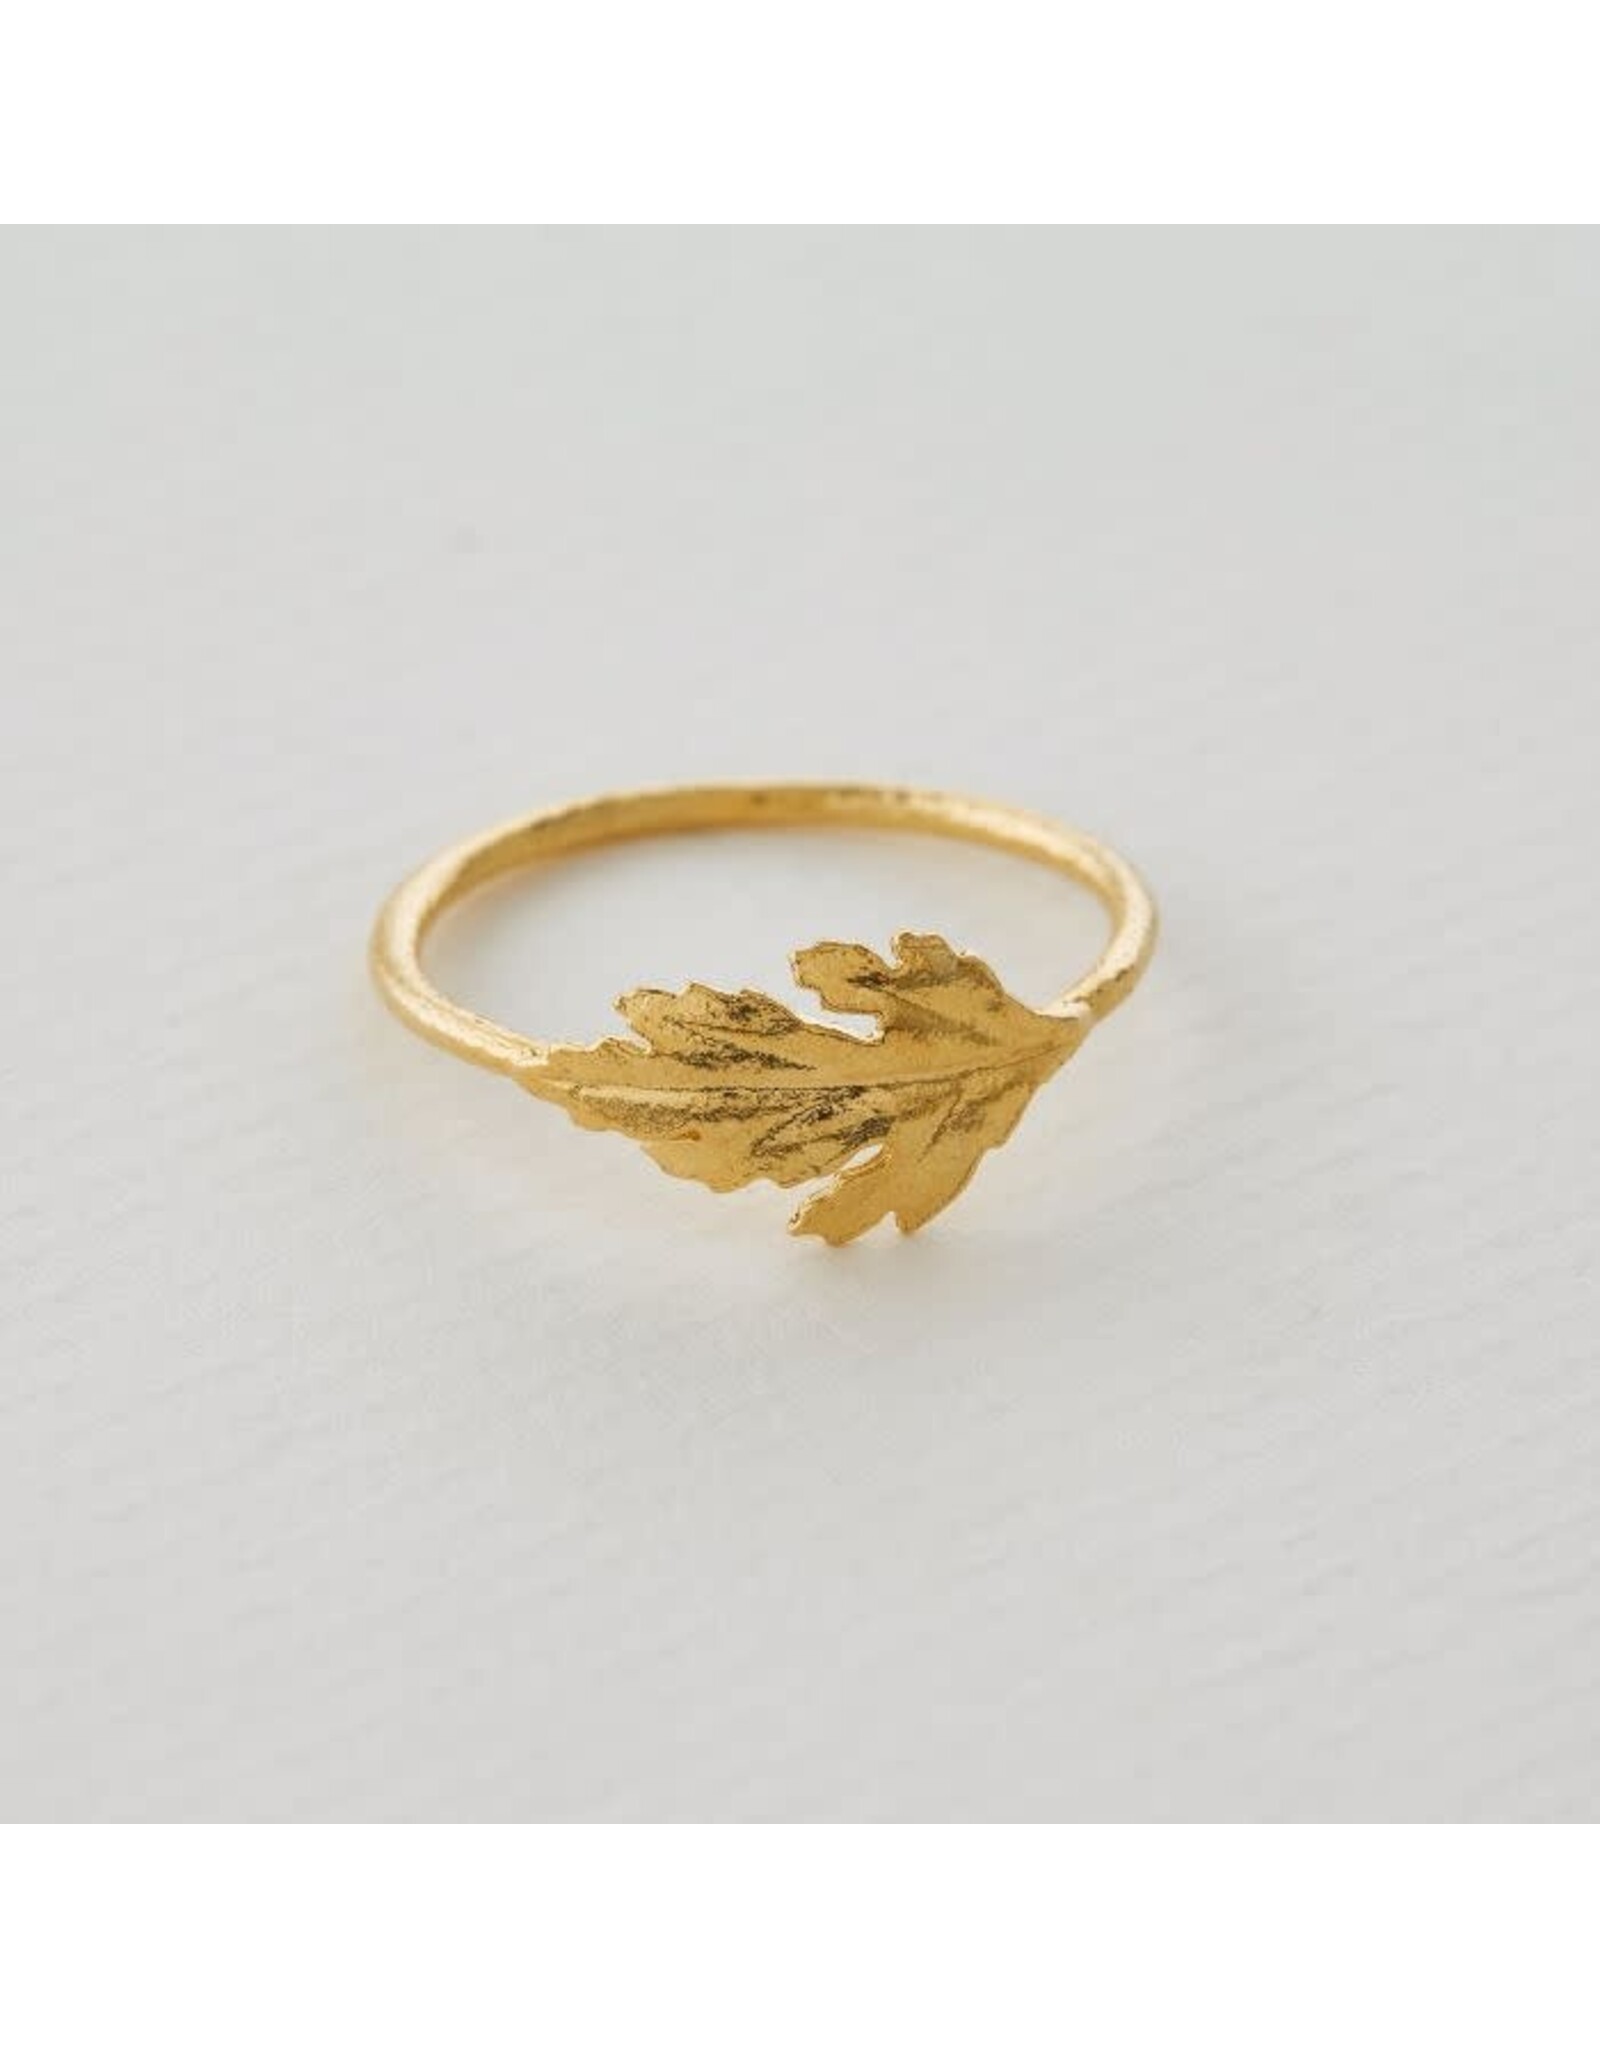 AM Chrysanthemum Leaf Ring